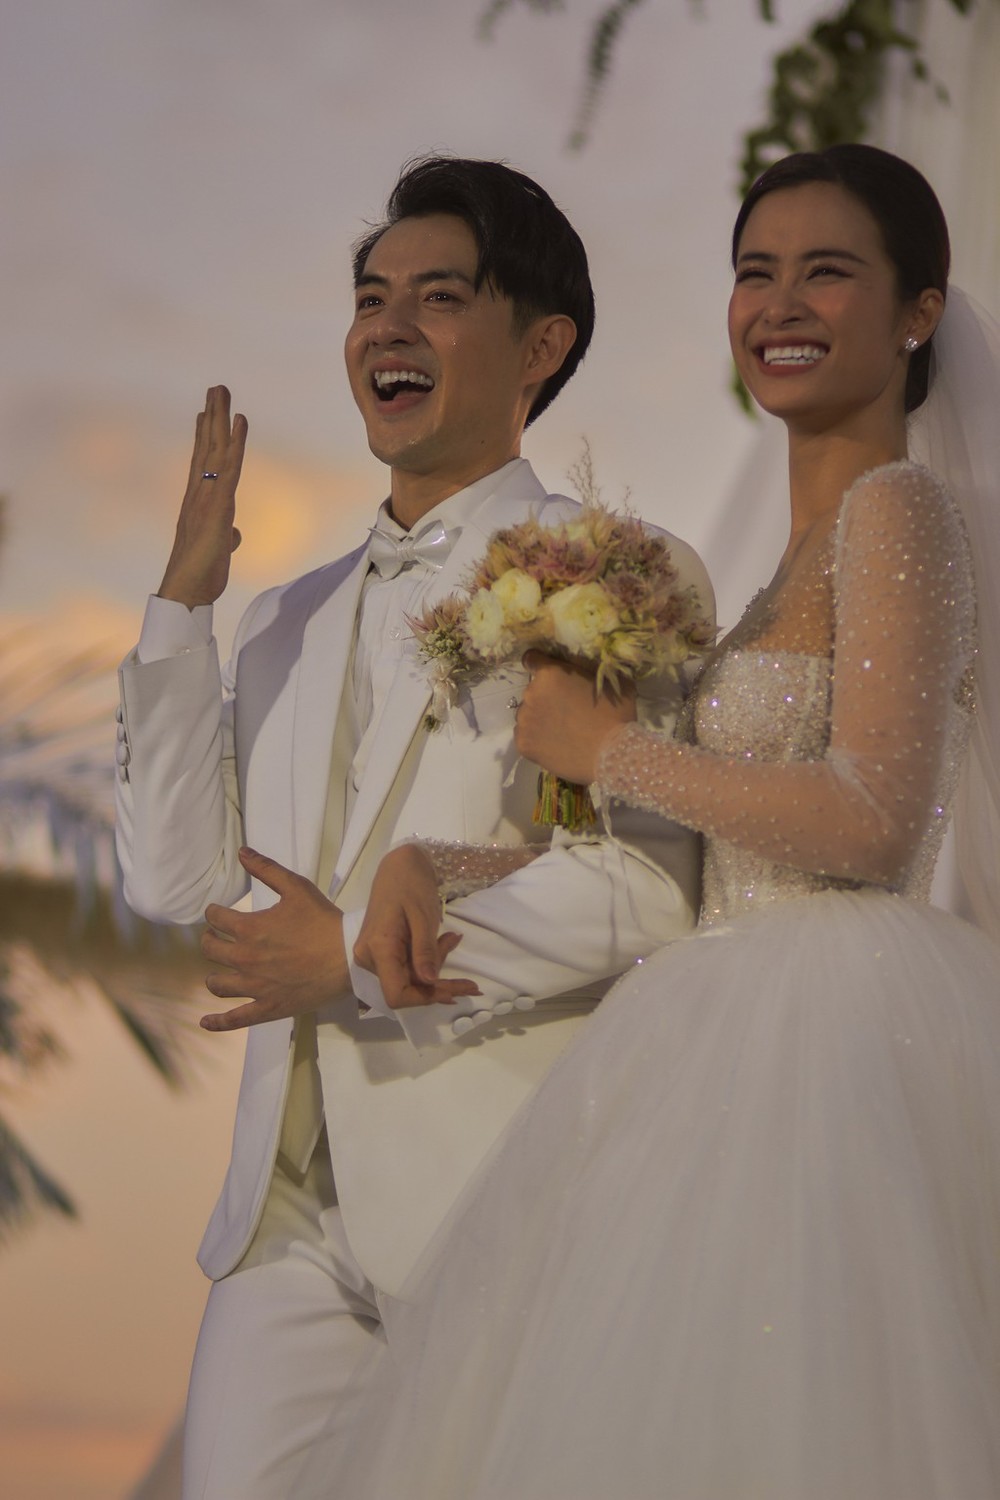  
Hai người hạnh phúc đeo nhẫn trong lễ cưới của mình. (Ảnh: Facebook) - Tin sao Viet - Tin tuc sao Viet - Scandal sao Viet - Tin tuc cua Sao - Tin cua Sao